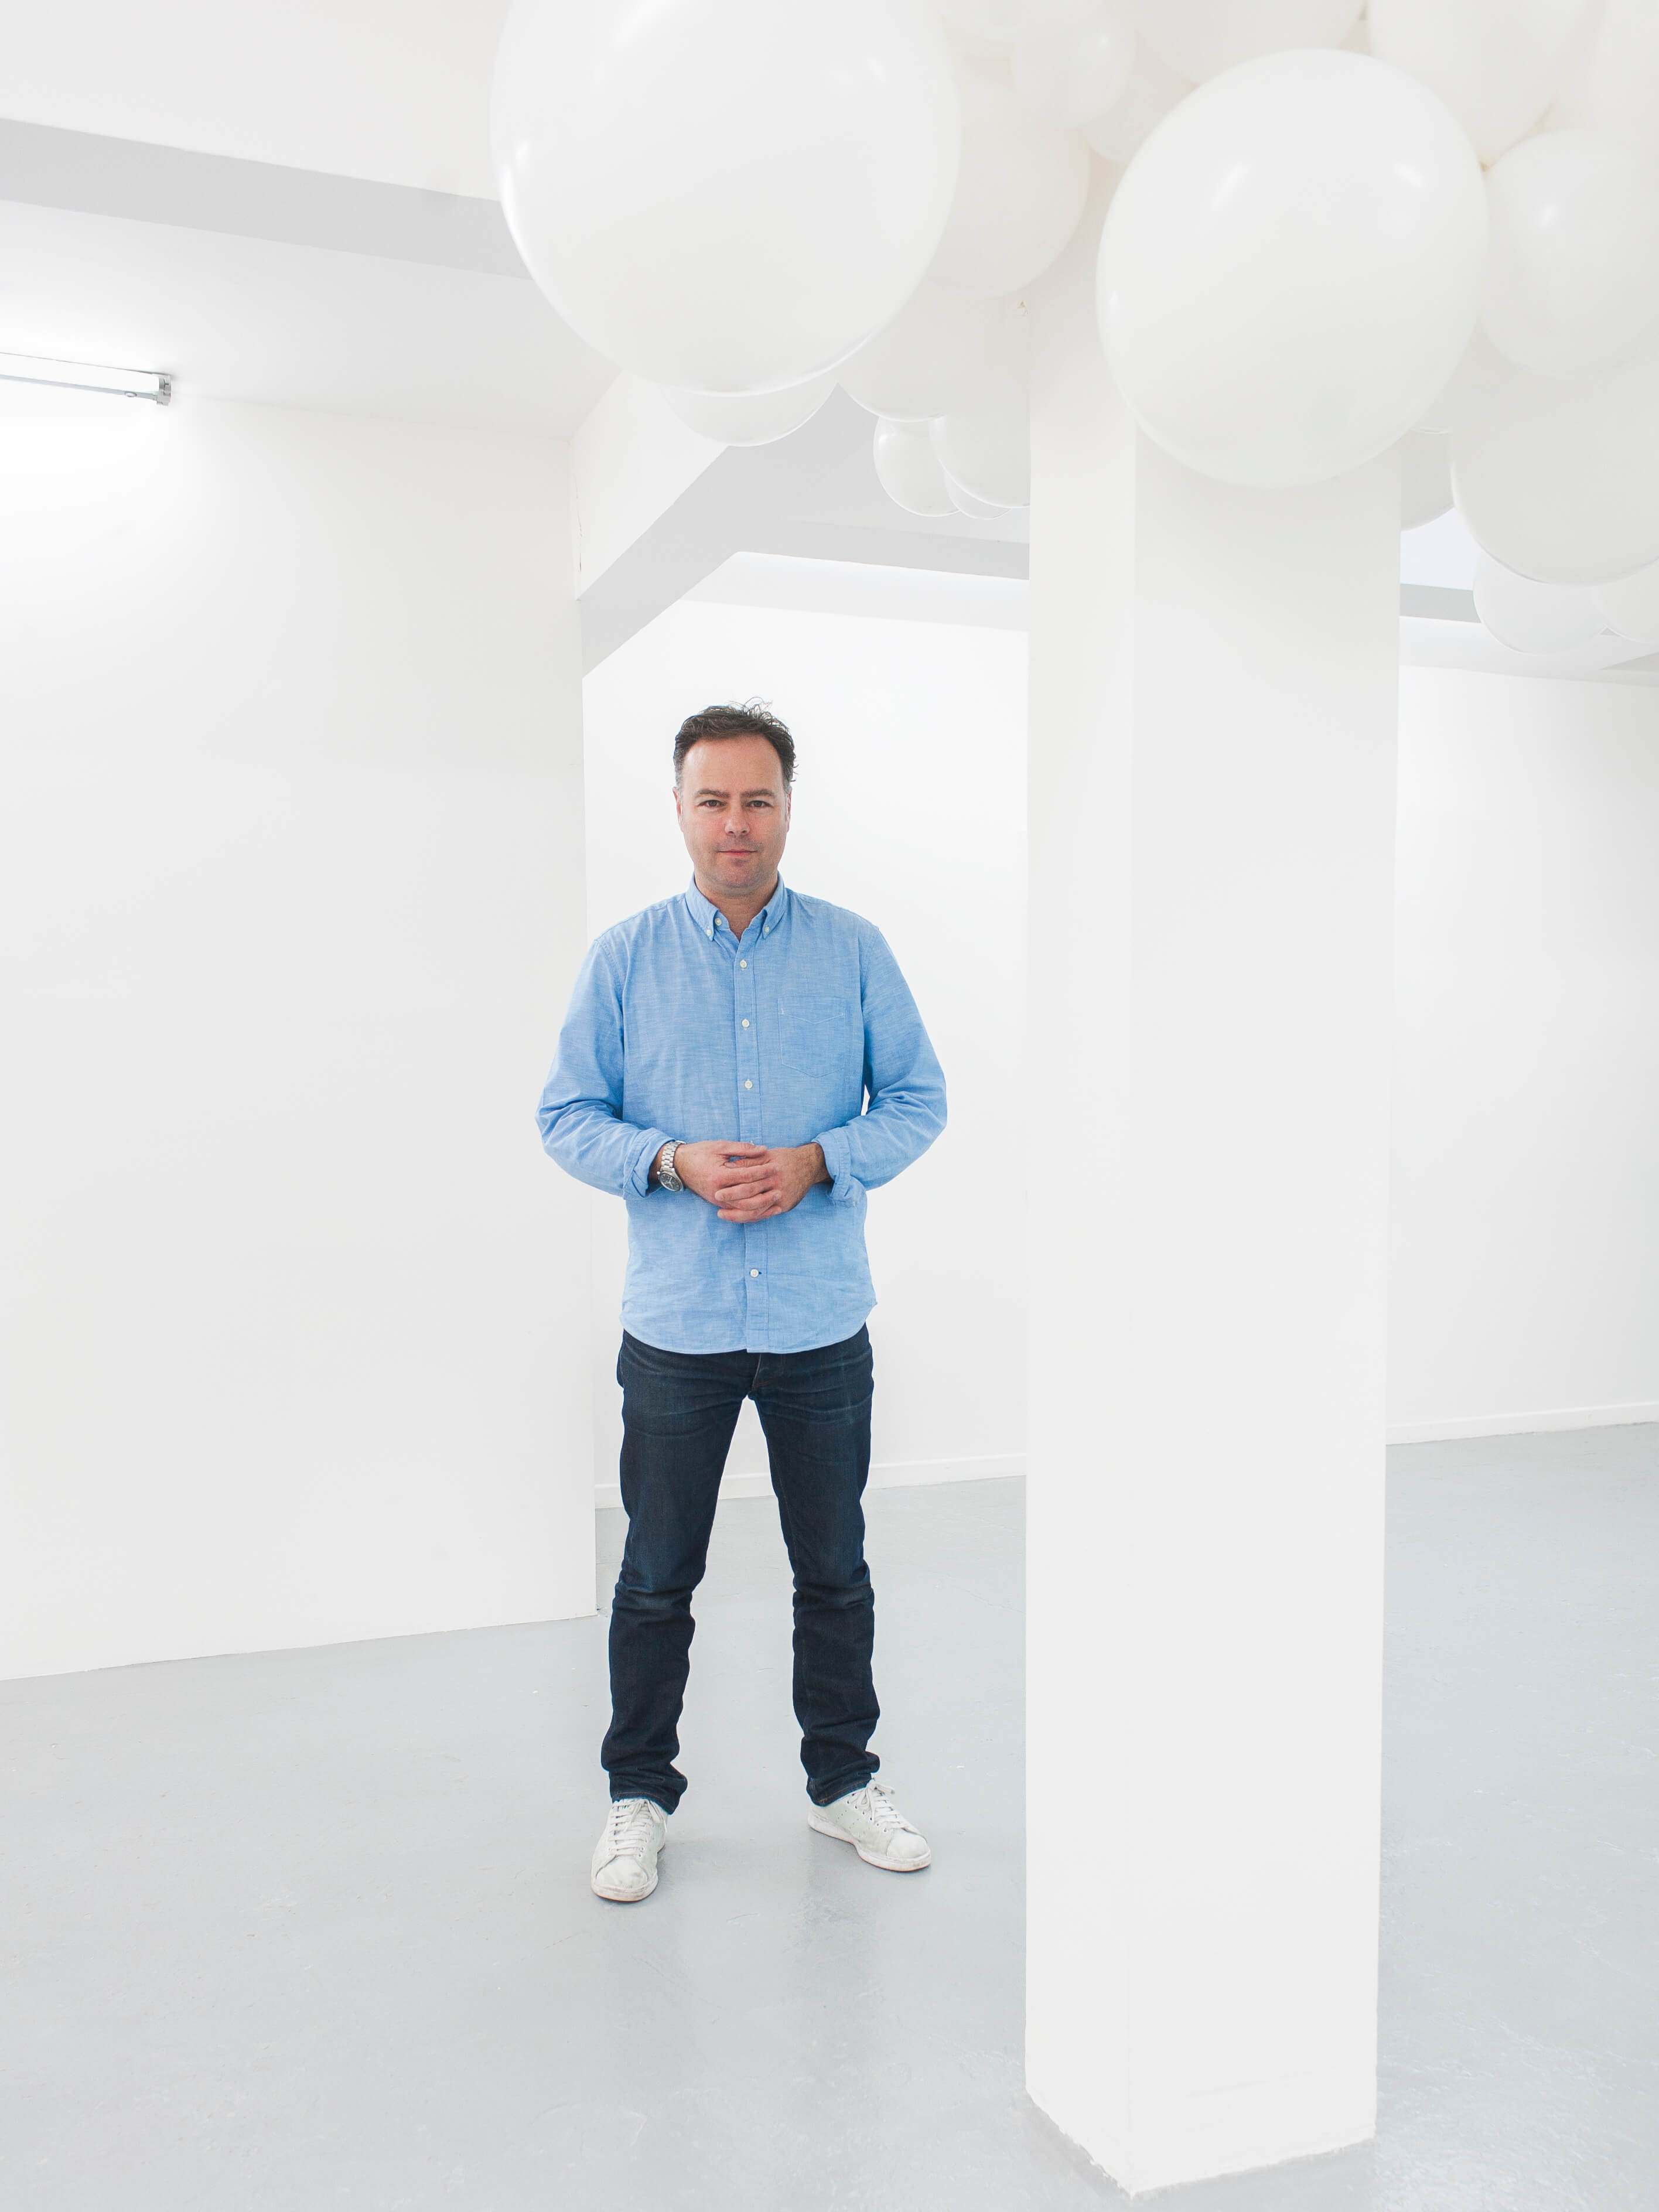 Konstnären Charles Petillon är känd för sina verk med ballonger. Hans installation med Sunbrella-tyger visades på SuperDesign-mässan i Milano 2017.